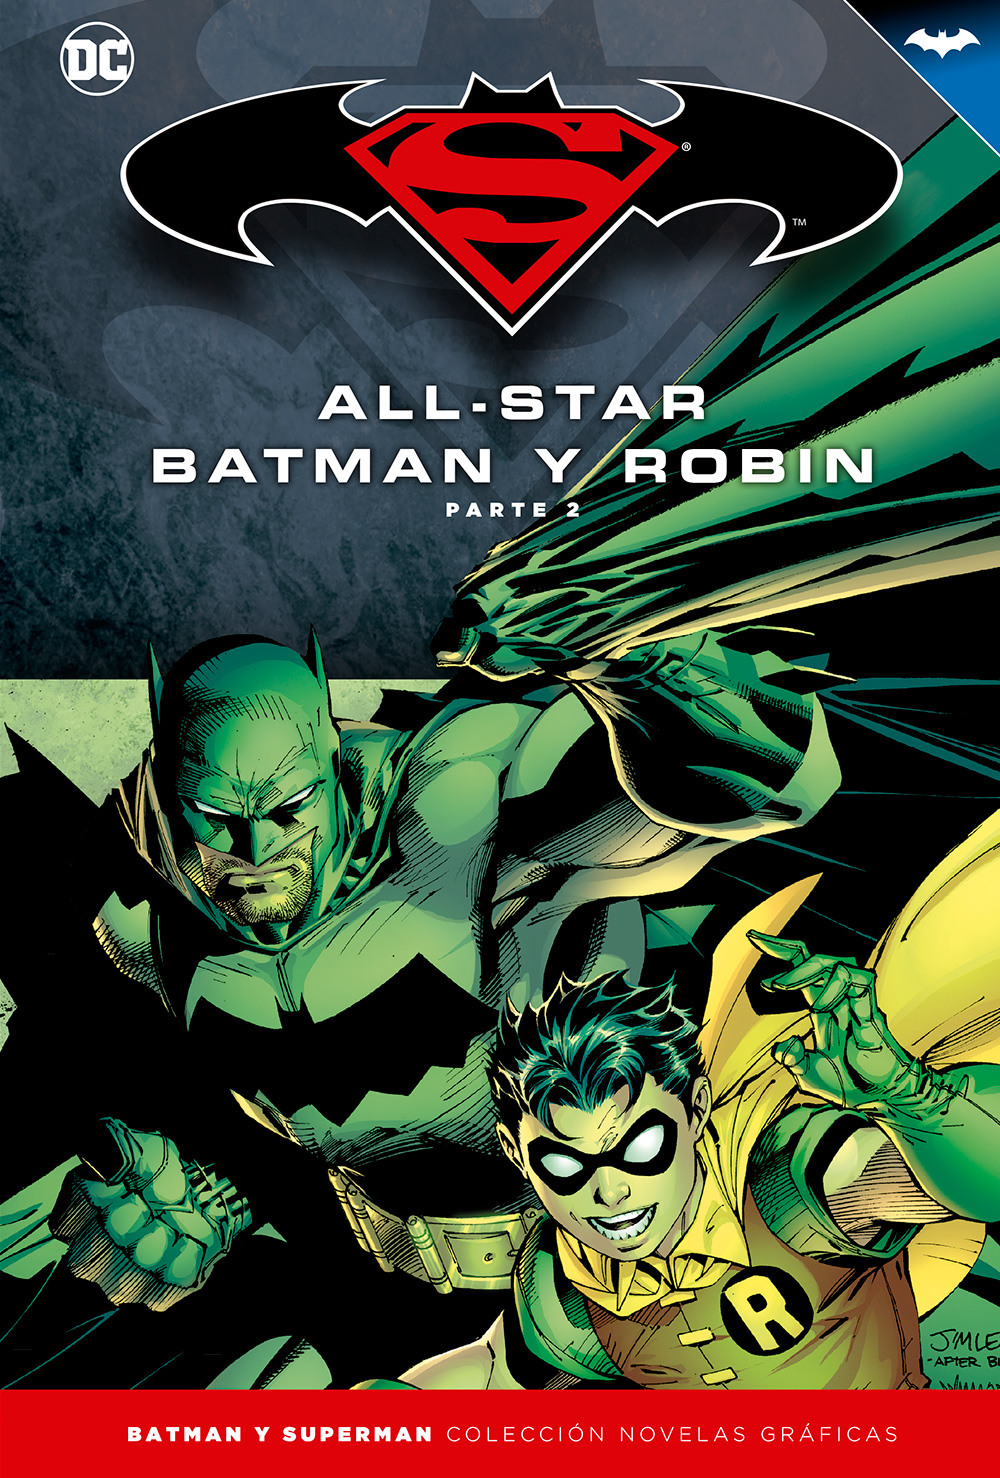 5-7 - [DC - Salvat] Batman y Superman: Colección Novelas Gráficas - Página 3 Portada_BMSM_3_AllStarBatman2